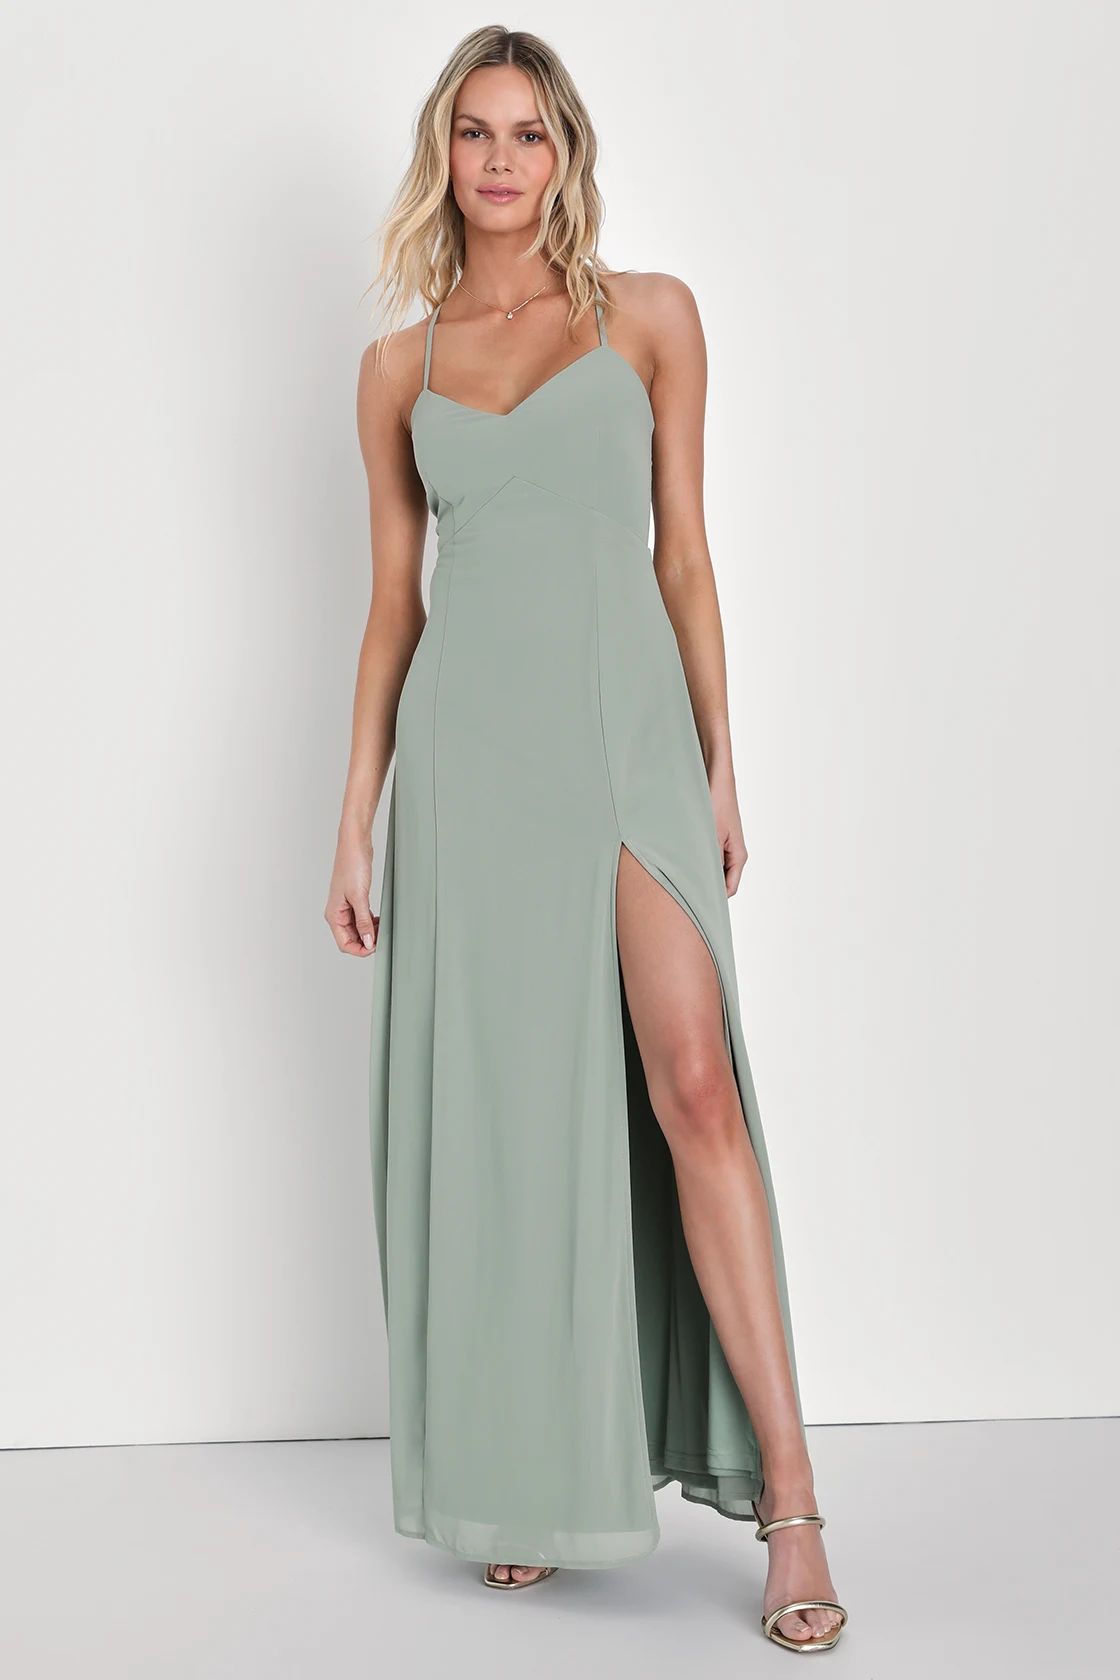 Adoring Elegance Sage Brush Sleeveless V-Neck Maxi Dress | Lulus (US)